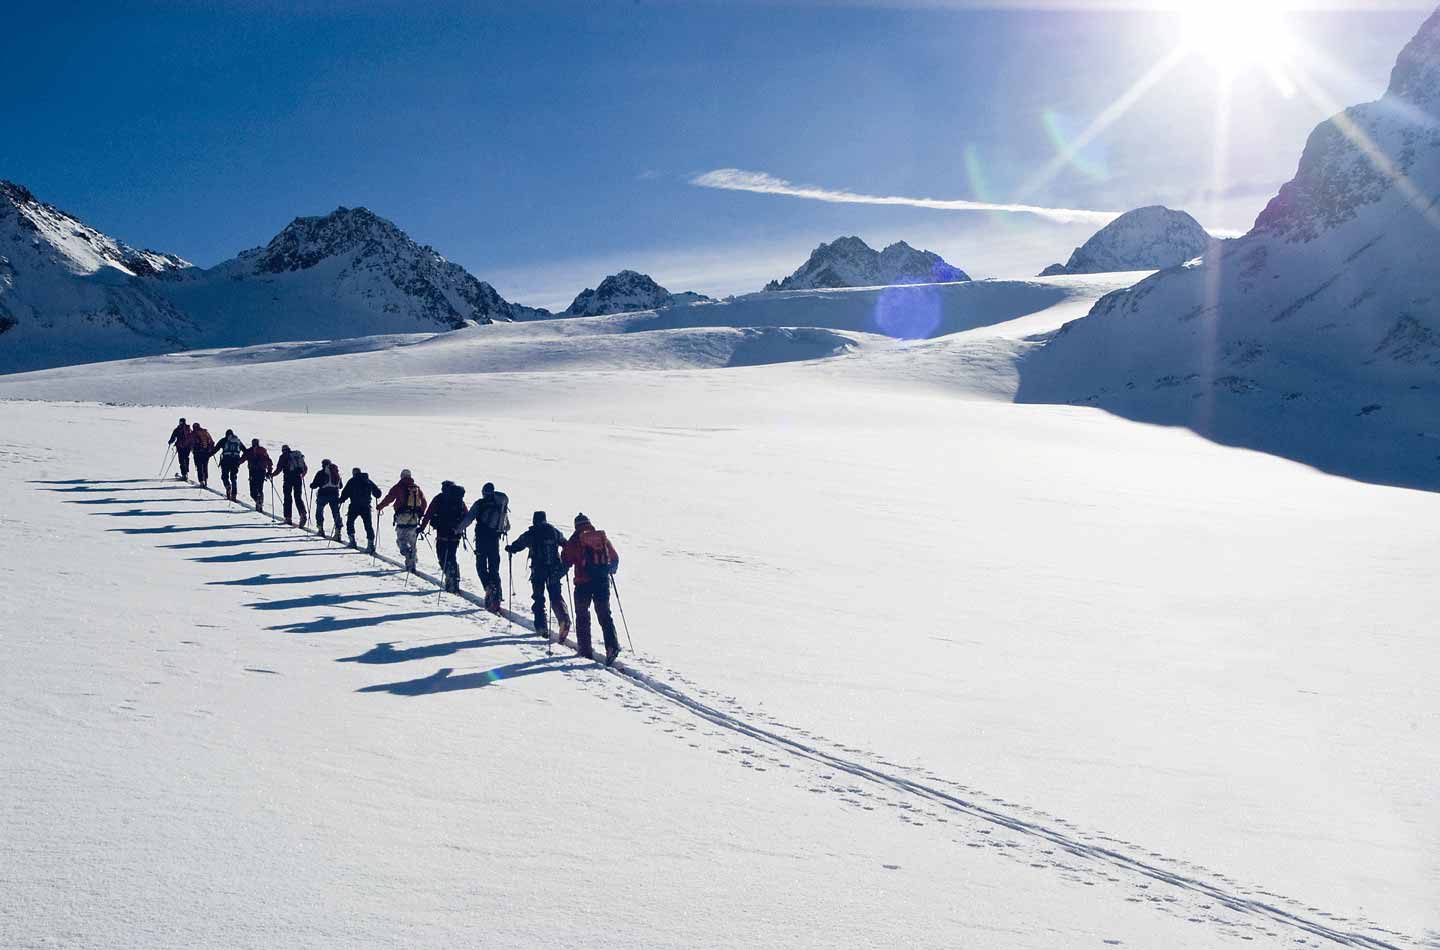 Winteraktivitäten im Schnee: Skitour in der Gruppe